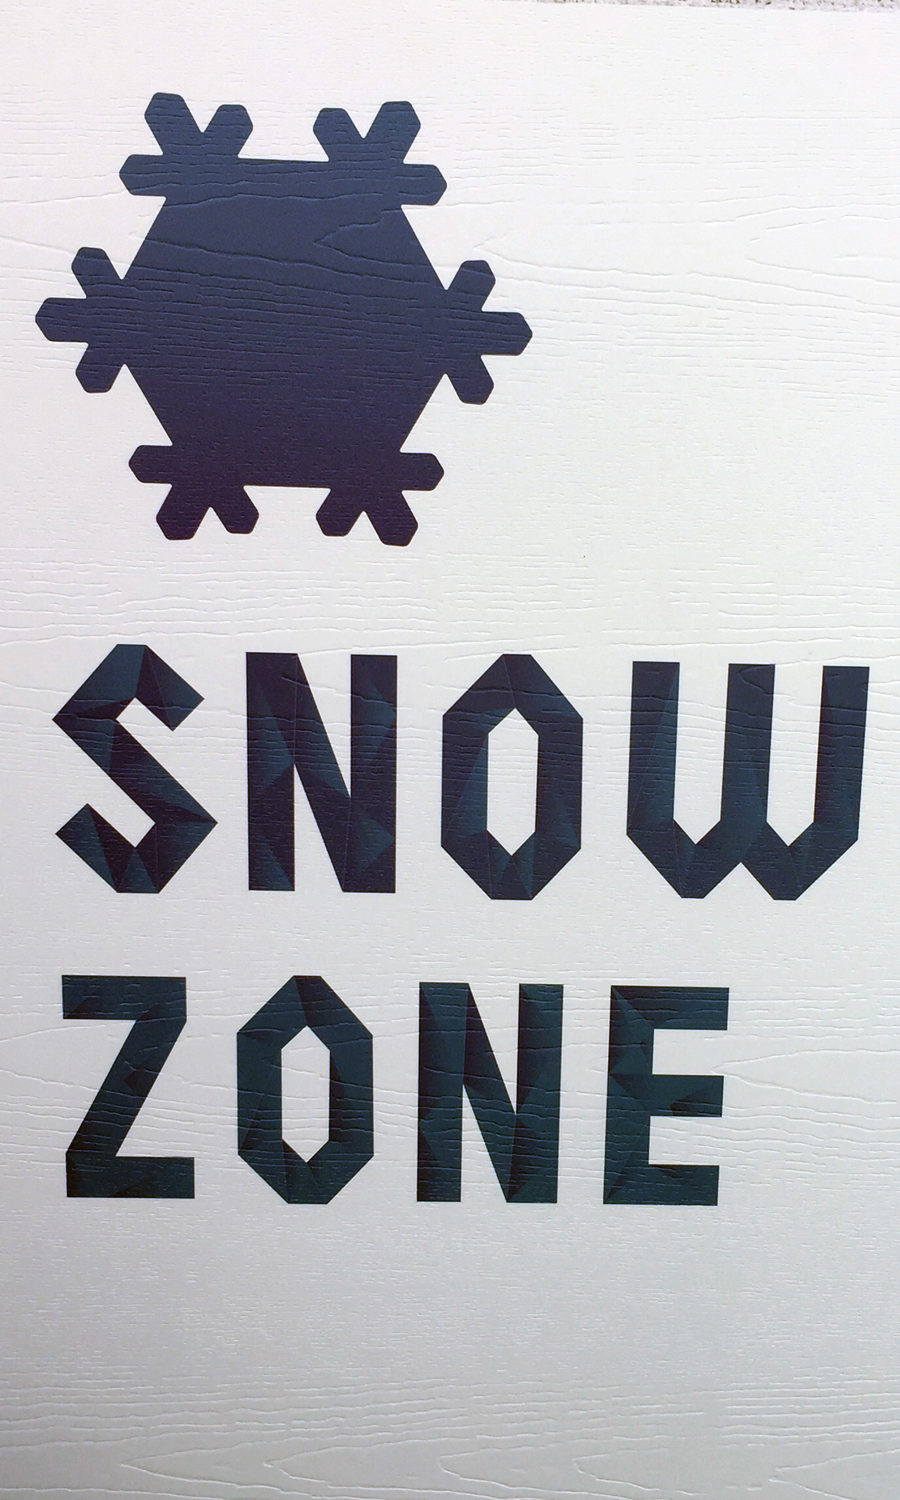 Snow Zone at Philadelphia Zoo's newest exhibit!